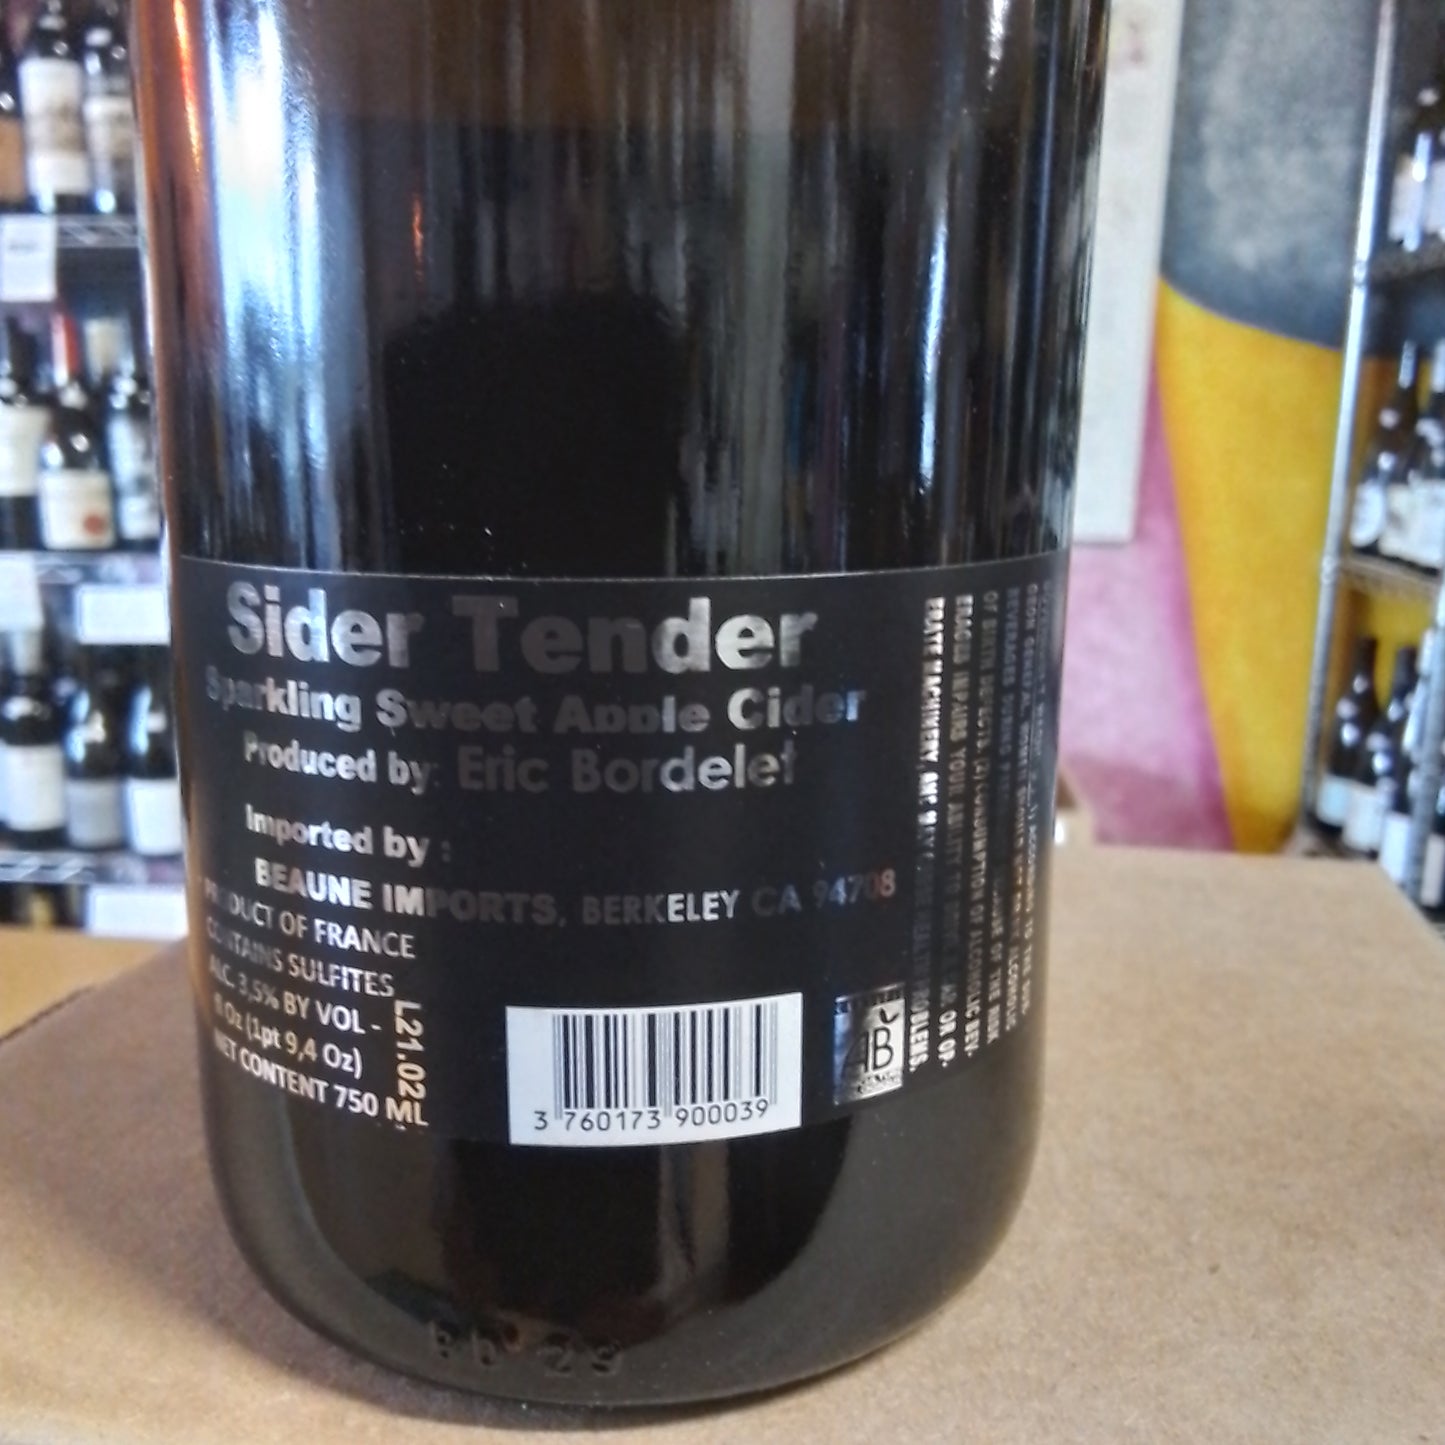 DOMAINE E. BORDELET Hard Apple Cider 'Tendre' (Normandy, France)